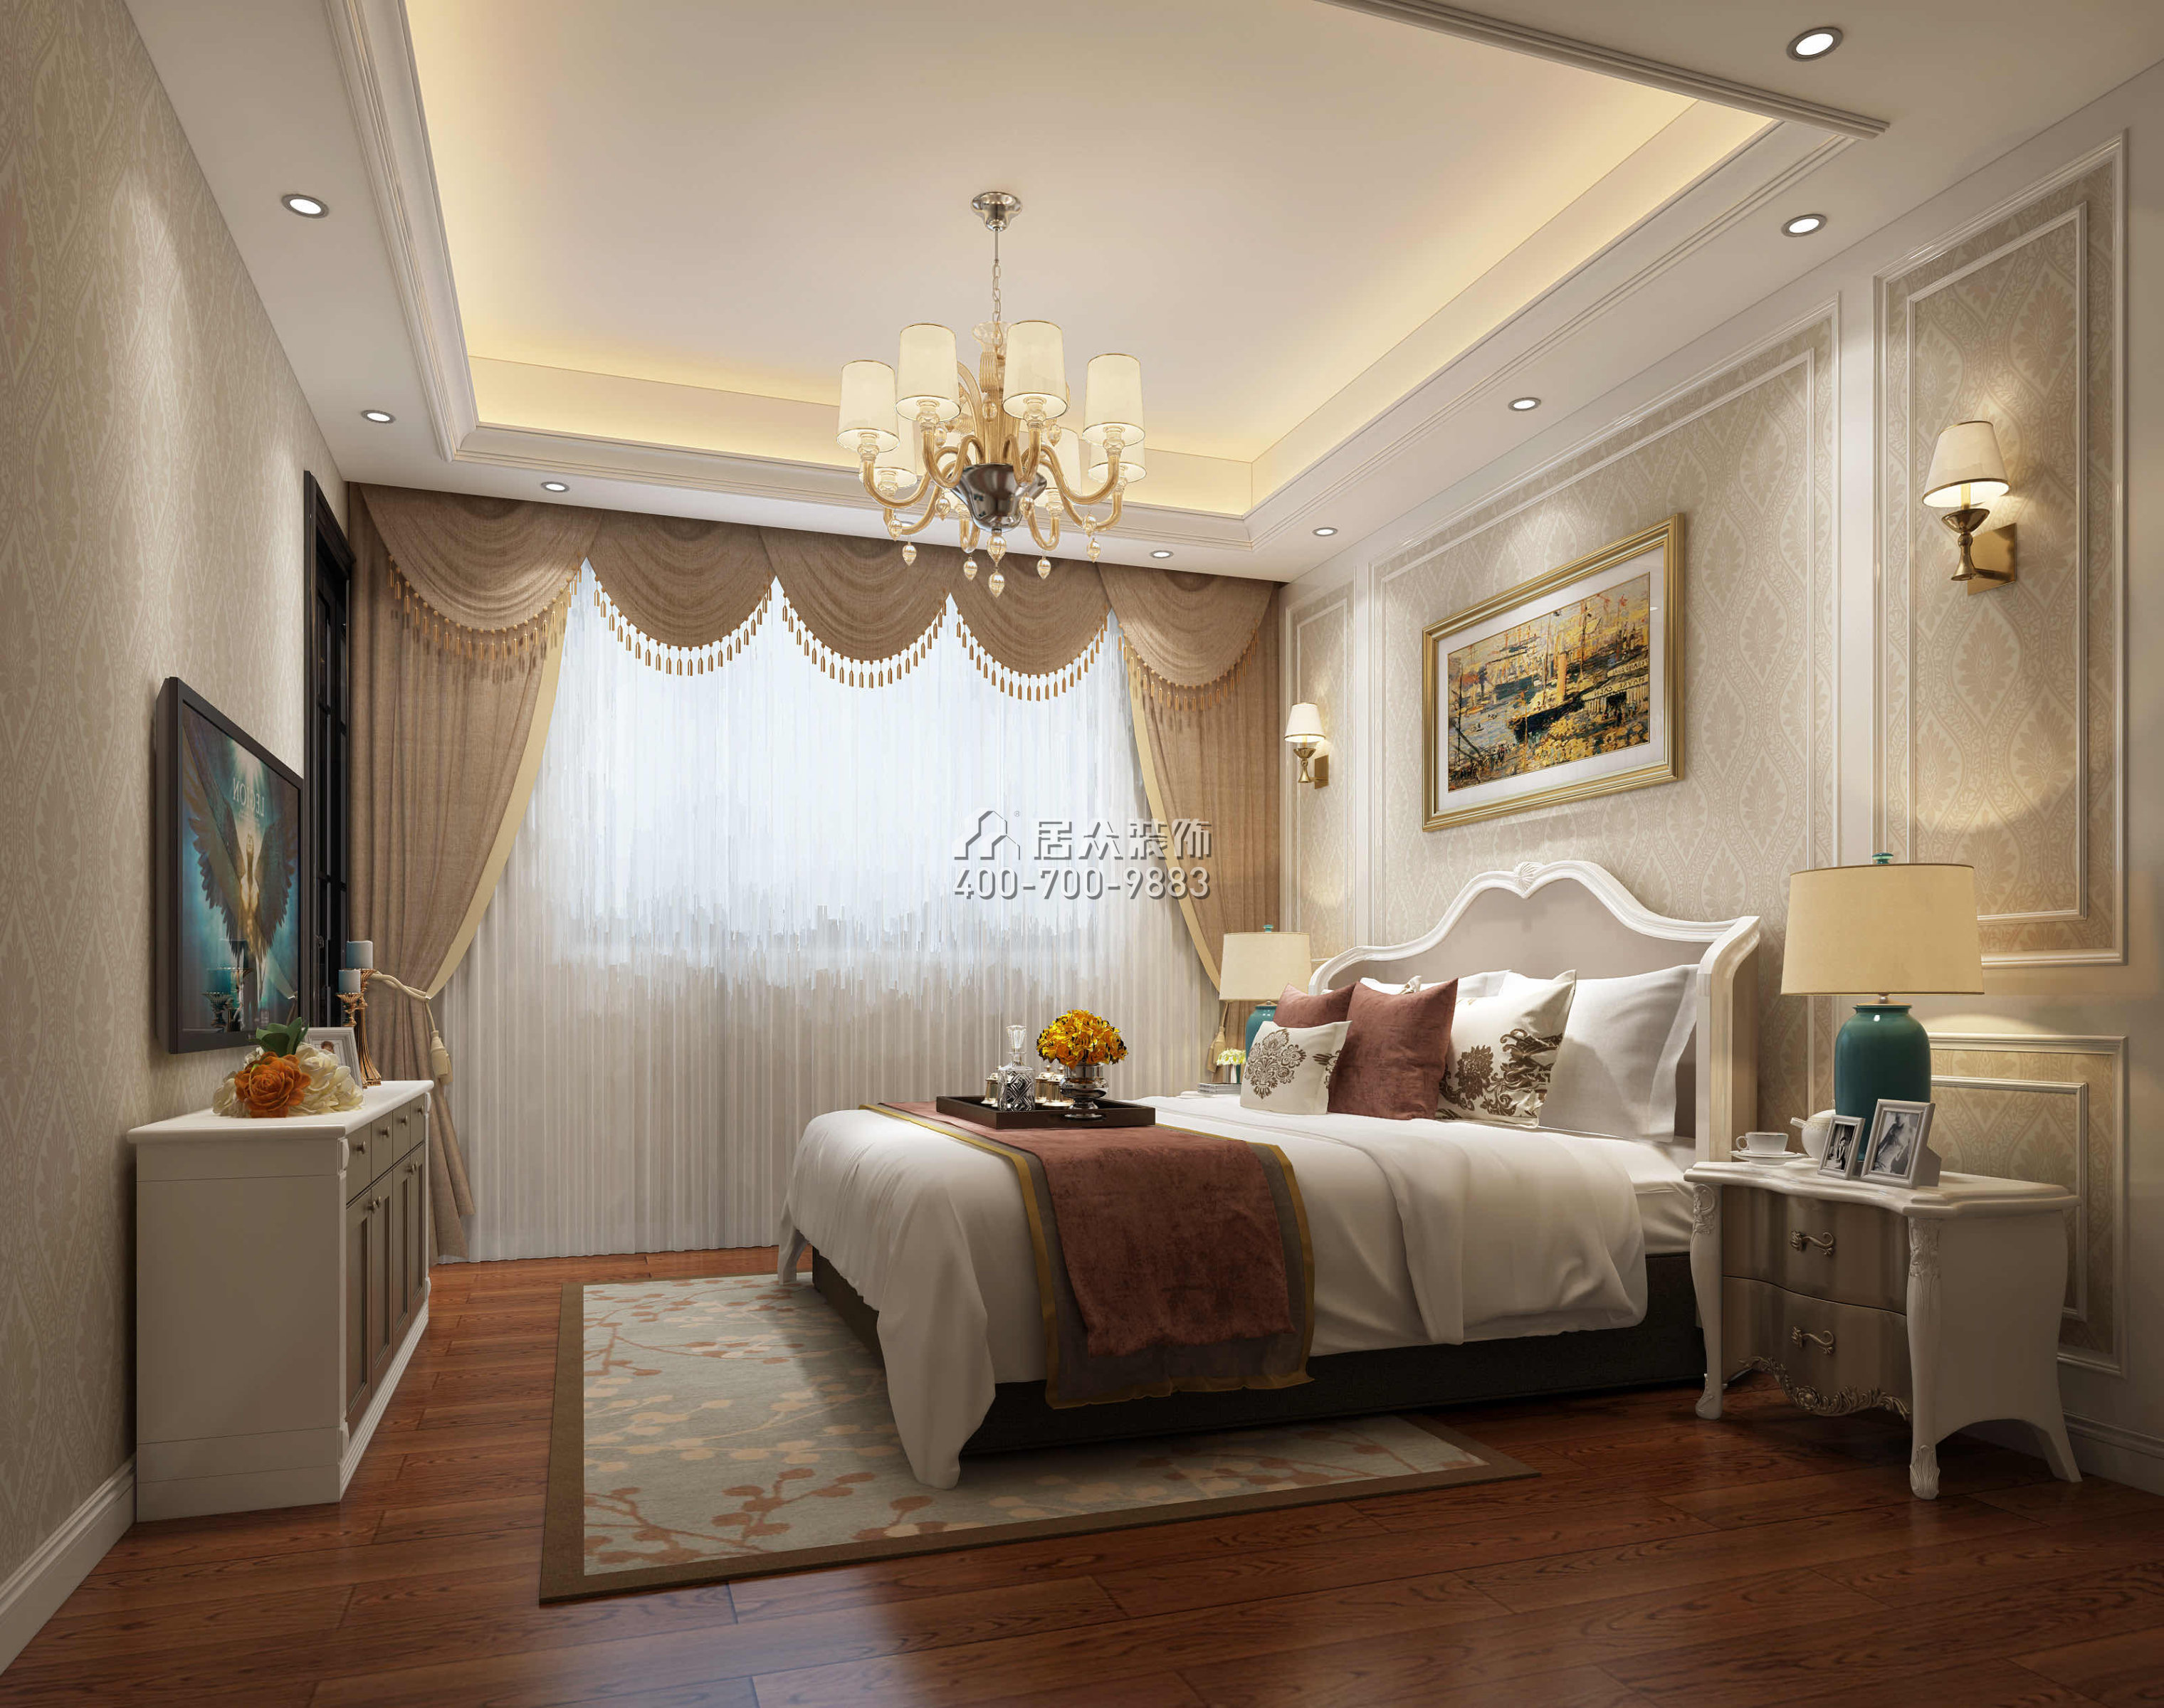 錦繡豪庭380平方米歐式風格別墅戶型臥室裝修效果圖